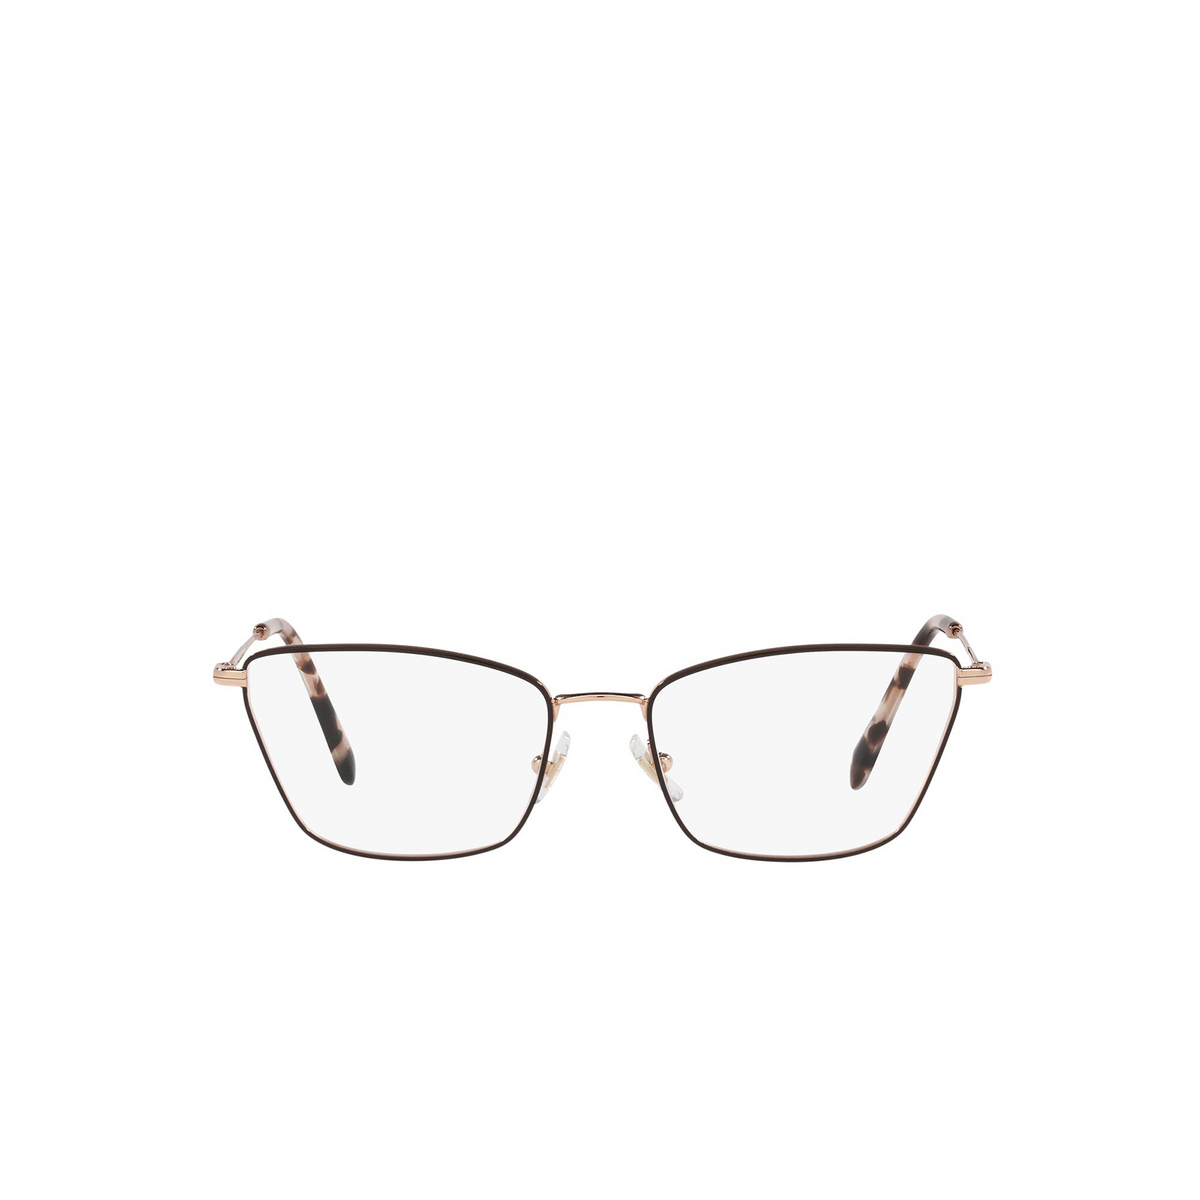 Miu Miu® Cat-eye Eyeglasses: MU 52SV color Brown 3311O1 - front view.